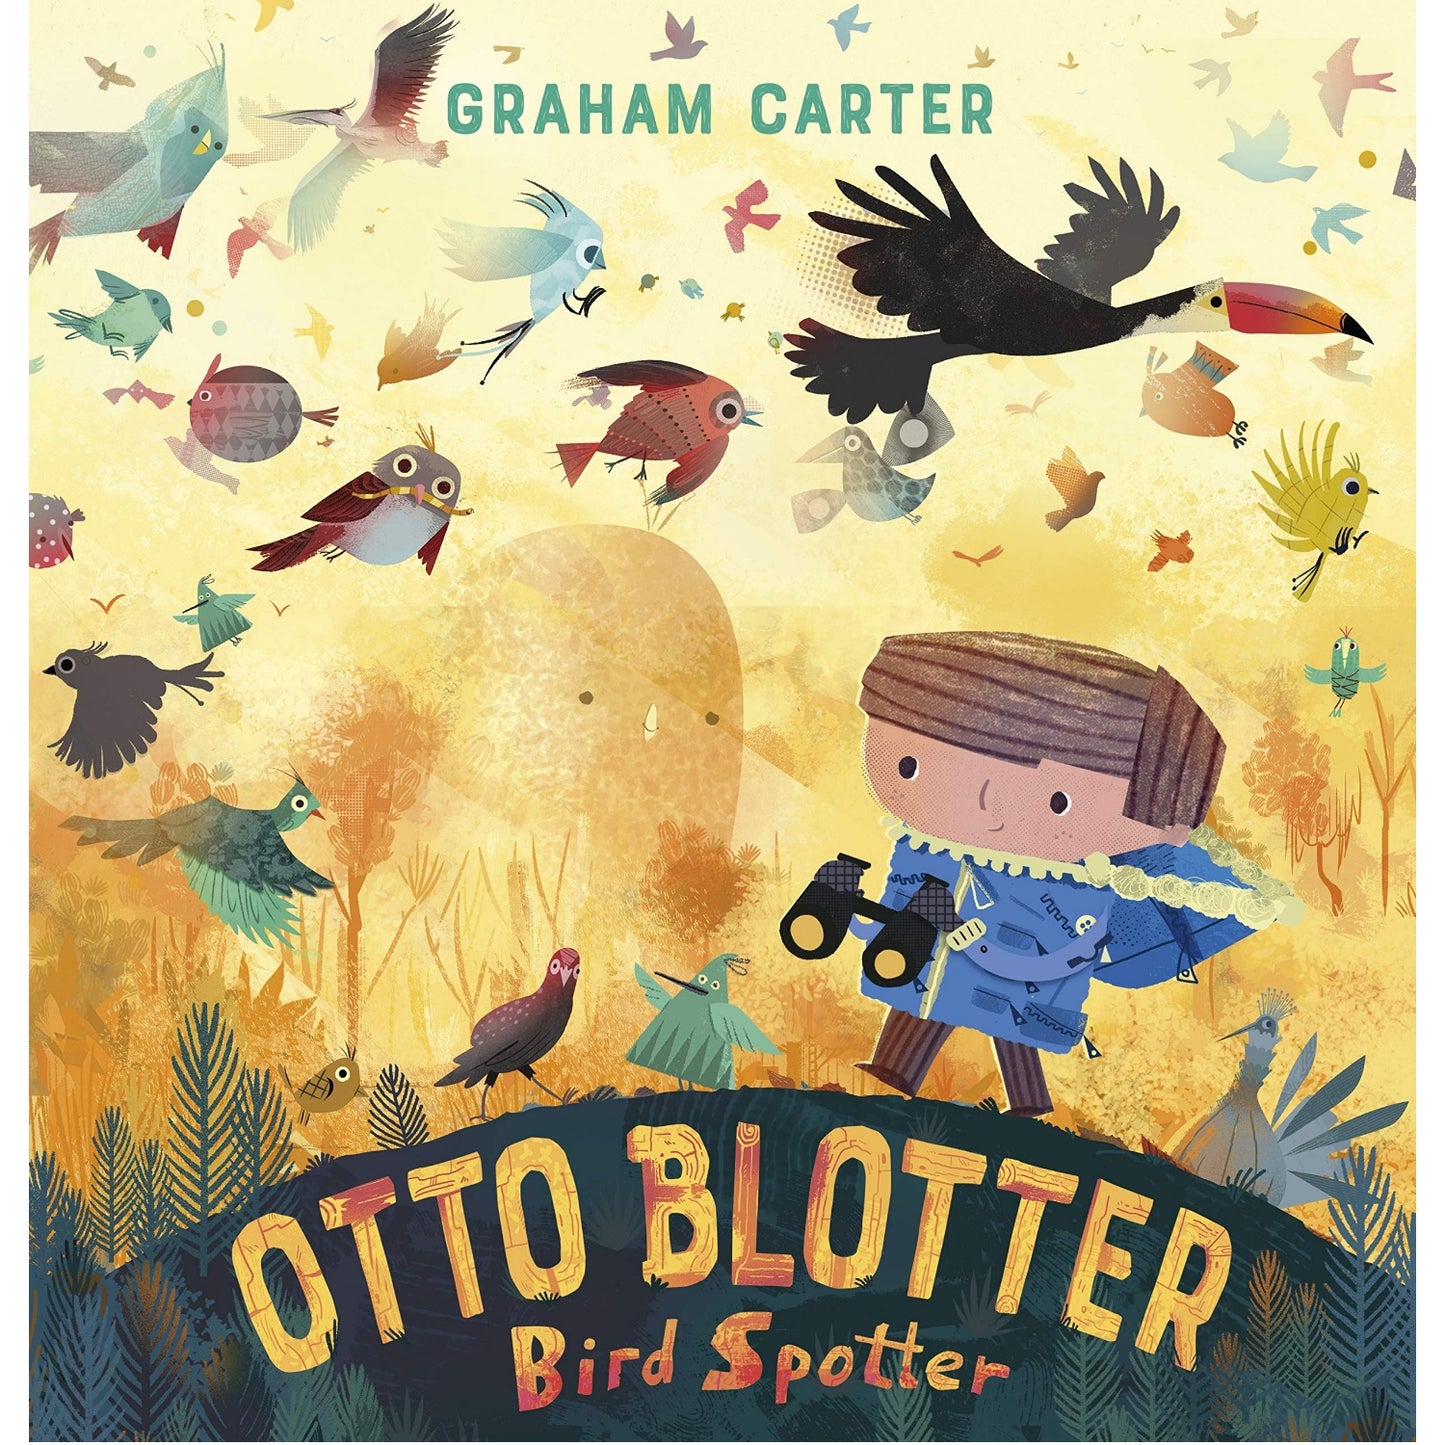 Otto Blotter, Bird Spotter | Children’s Book on Friendship